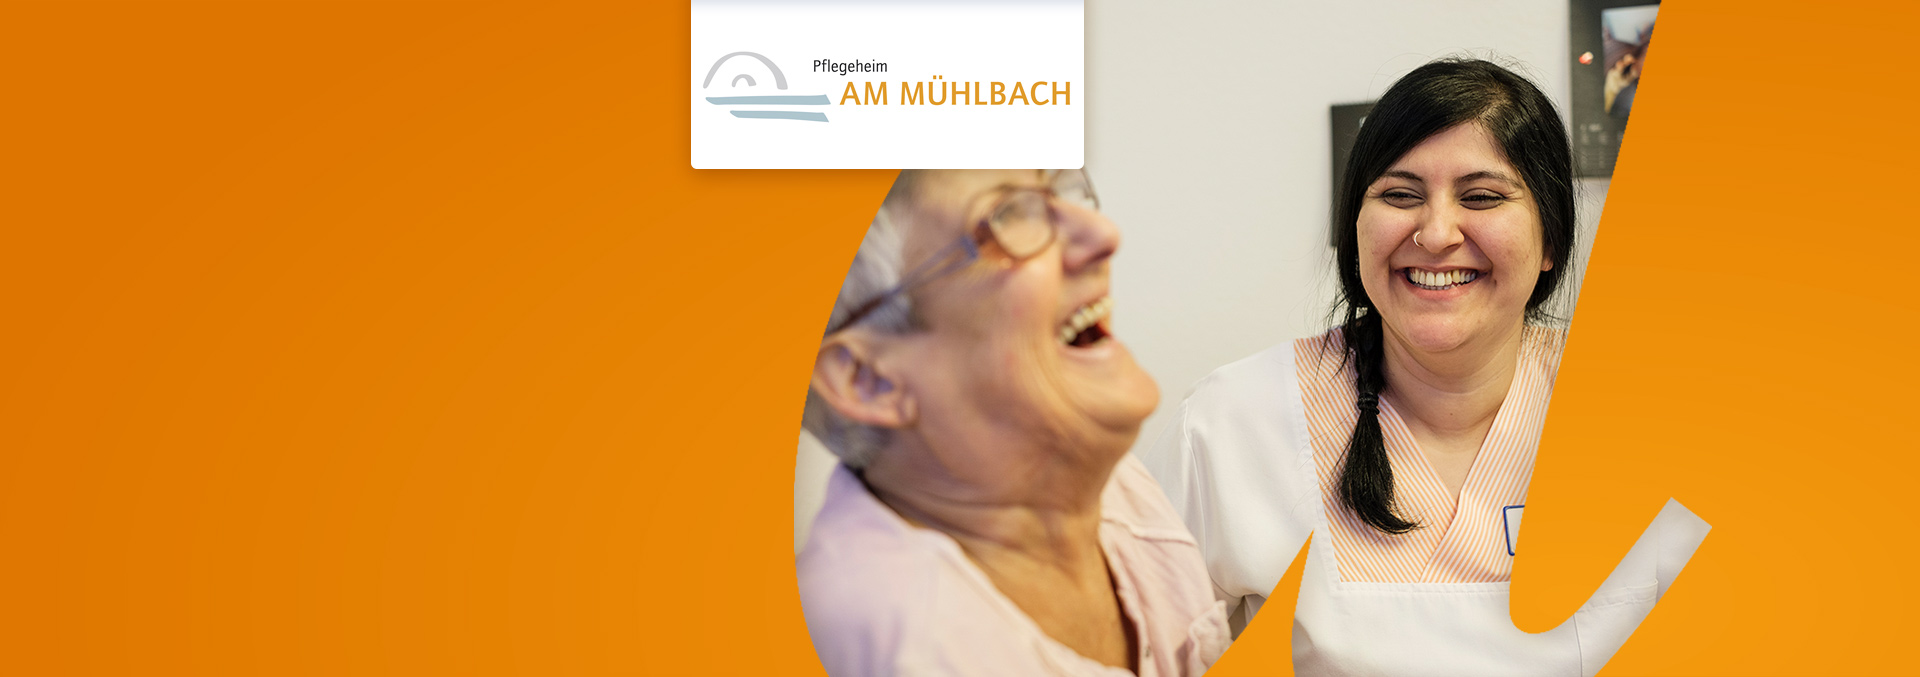 Pflegeheim Am Mühlbach, eine Pflegerin und eine Bewohnerin lachen gemeinsam.